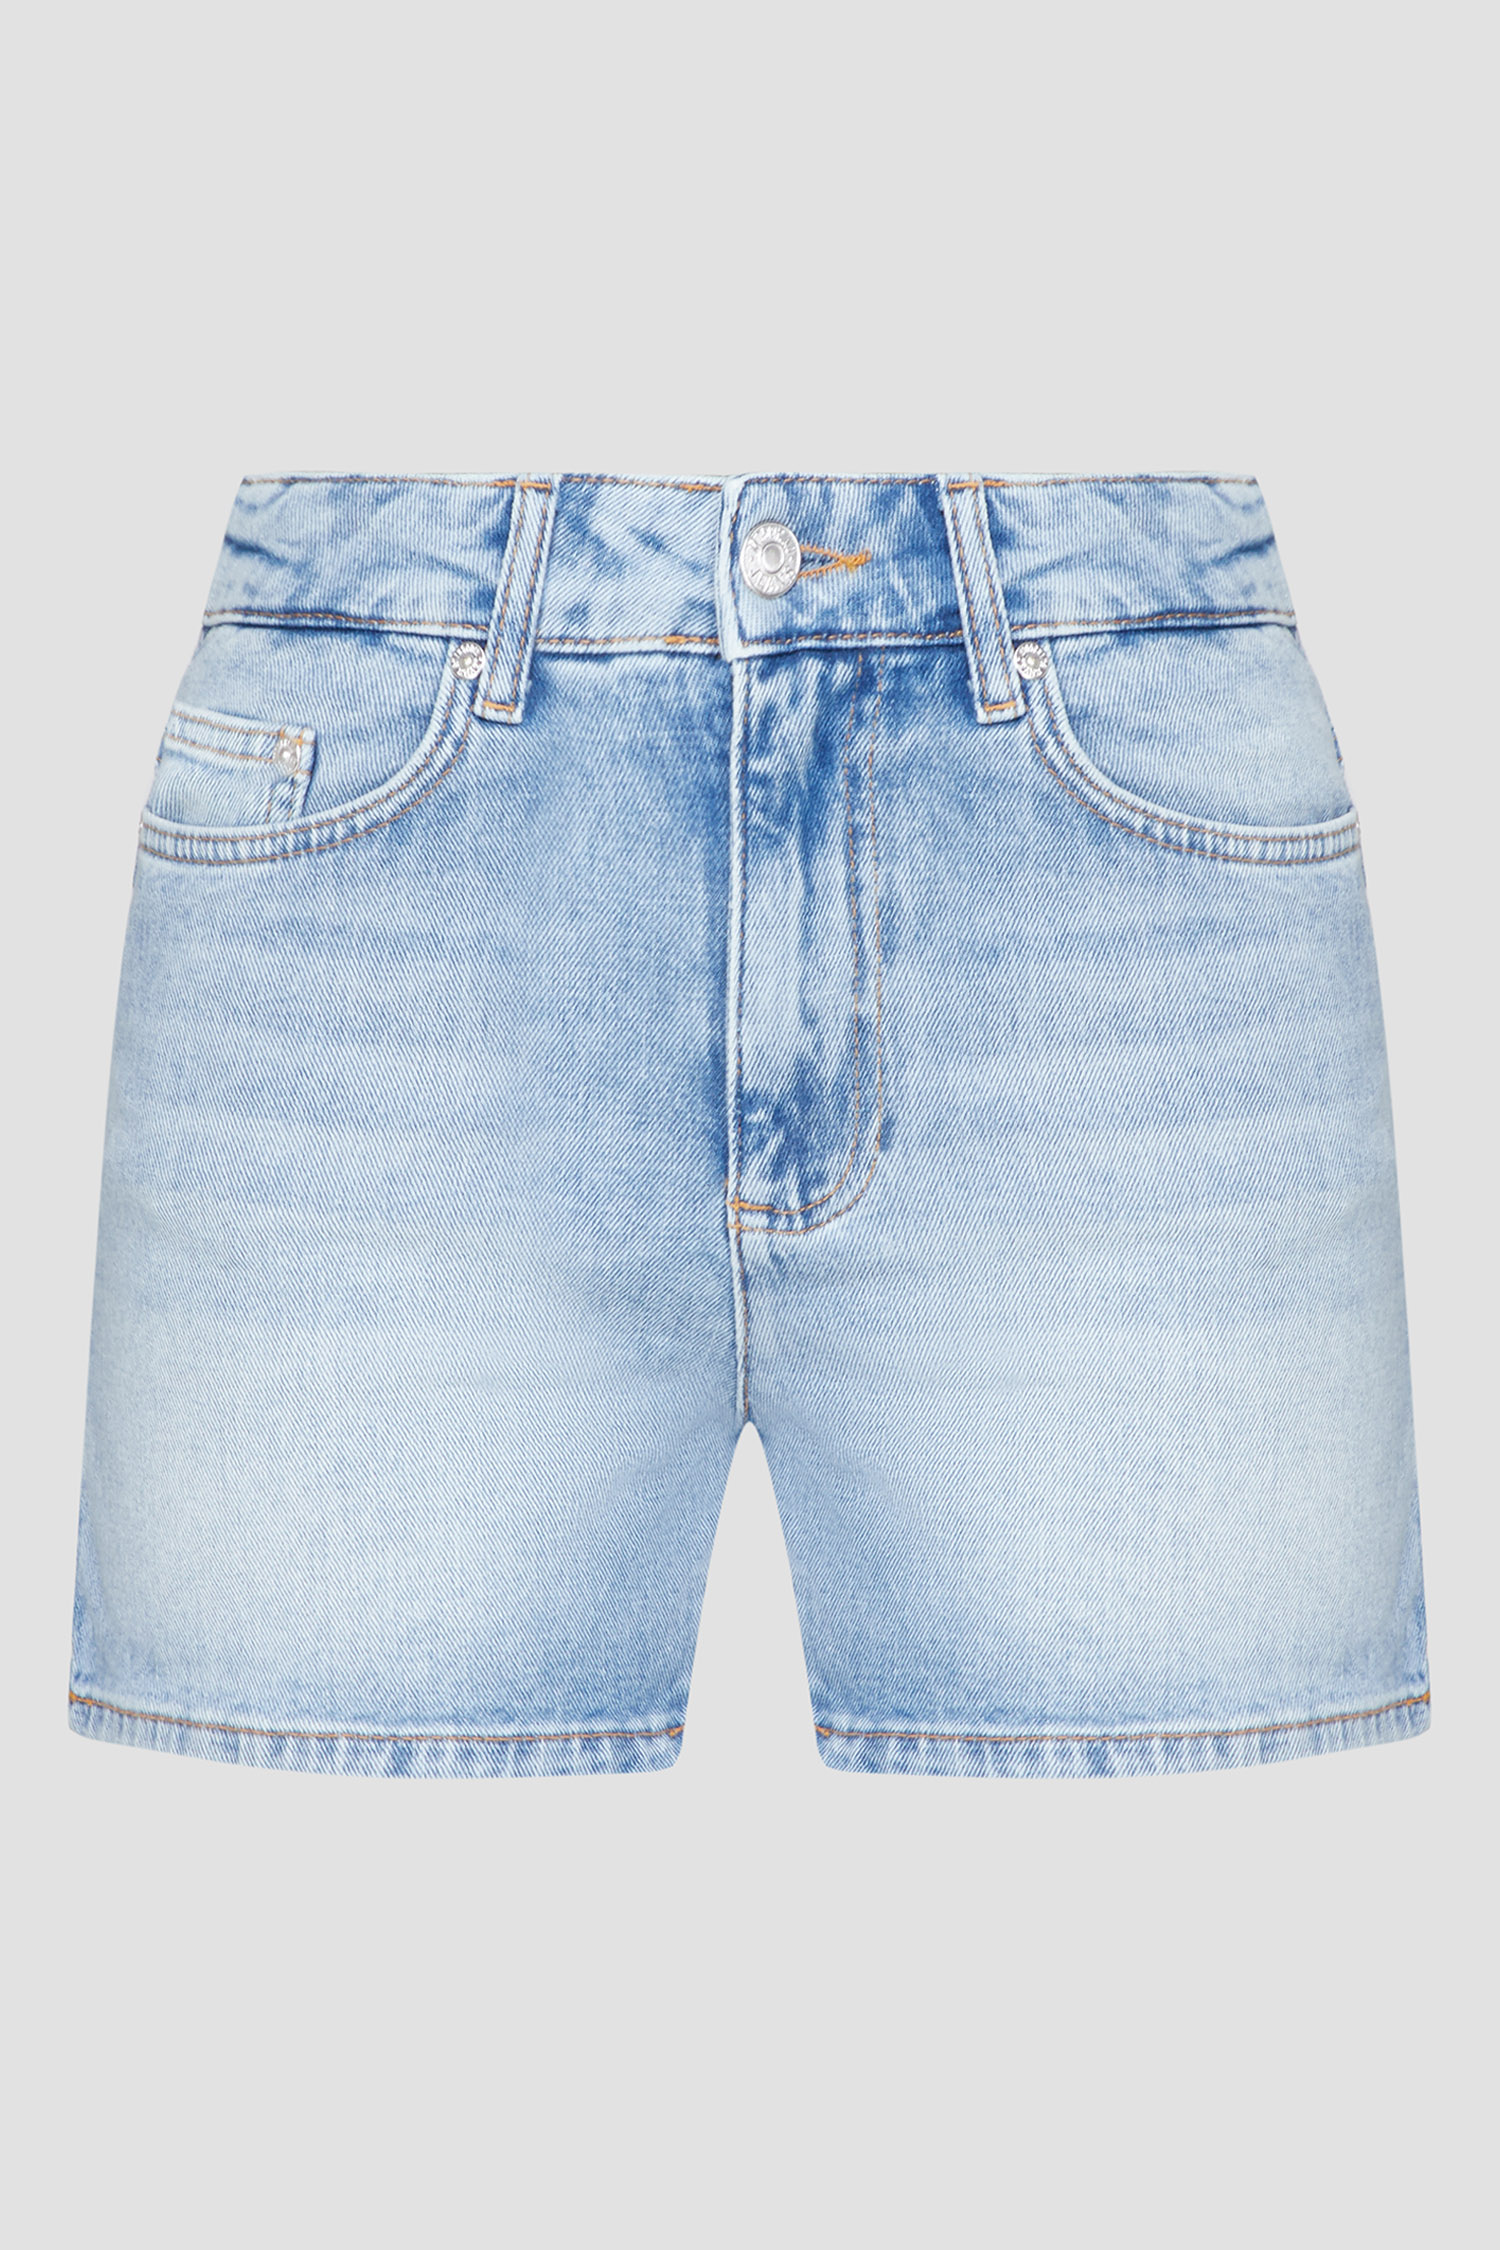 Женские голубые джинсовые шорты Moschino J0302.3739;1295